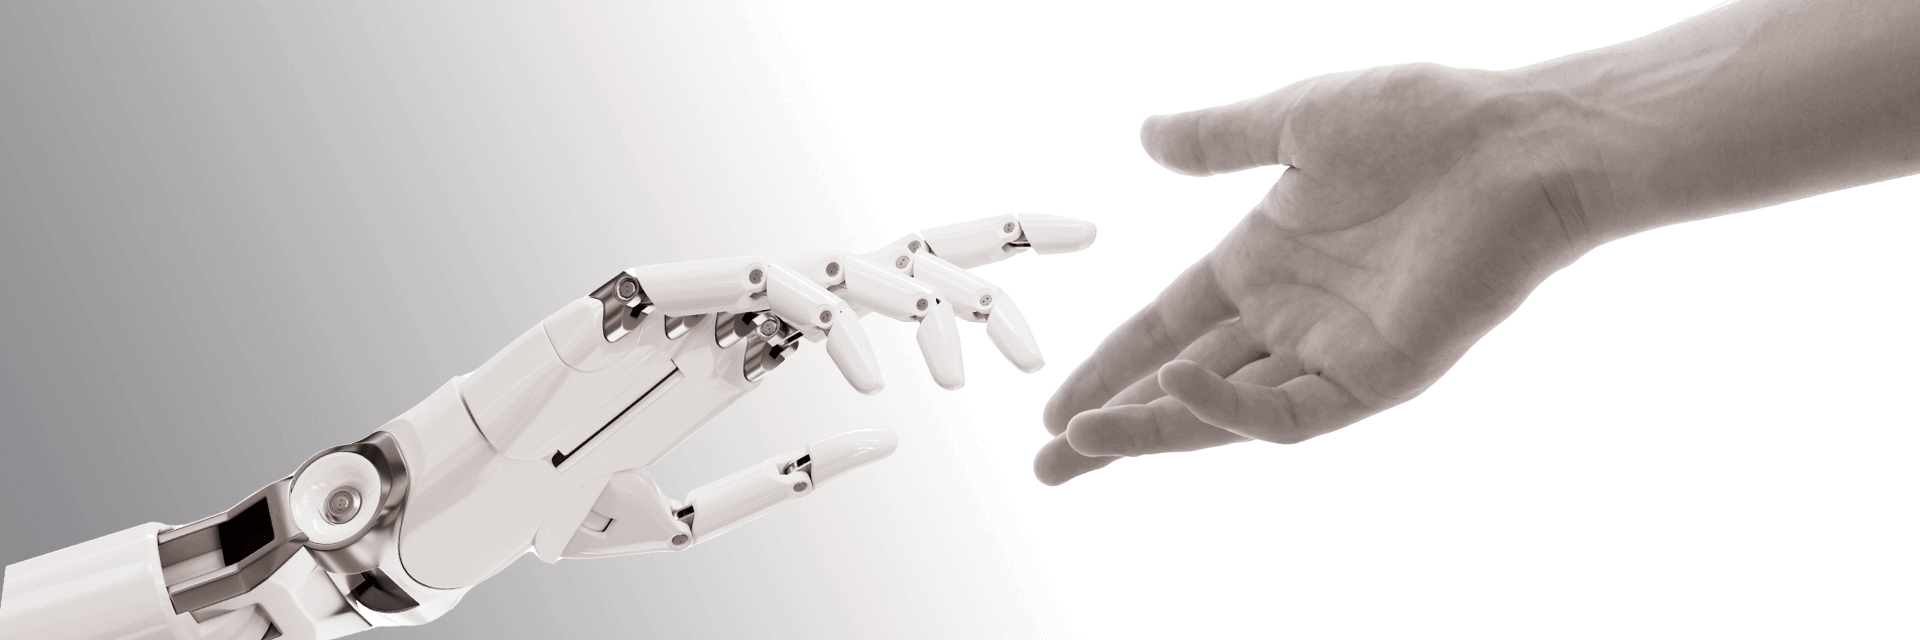 Une main robotique et une main humaine se tendent l'une vers l'autre